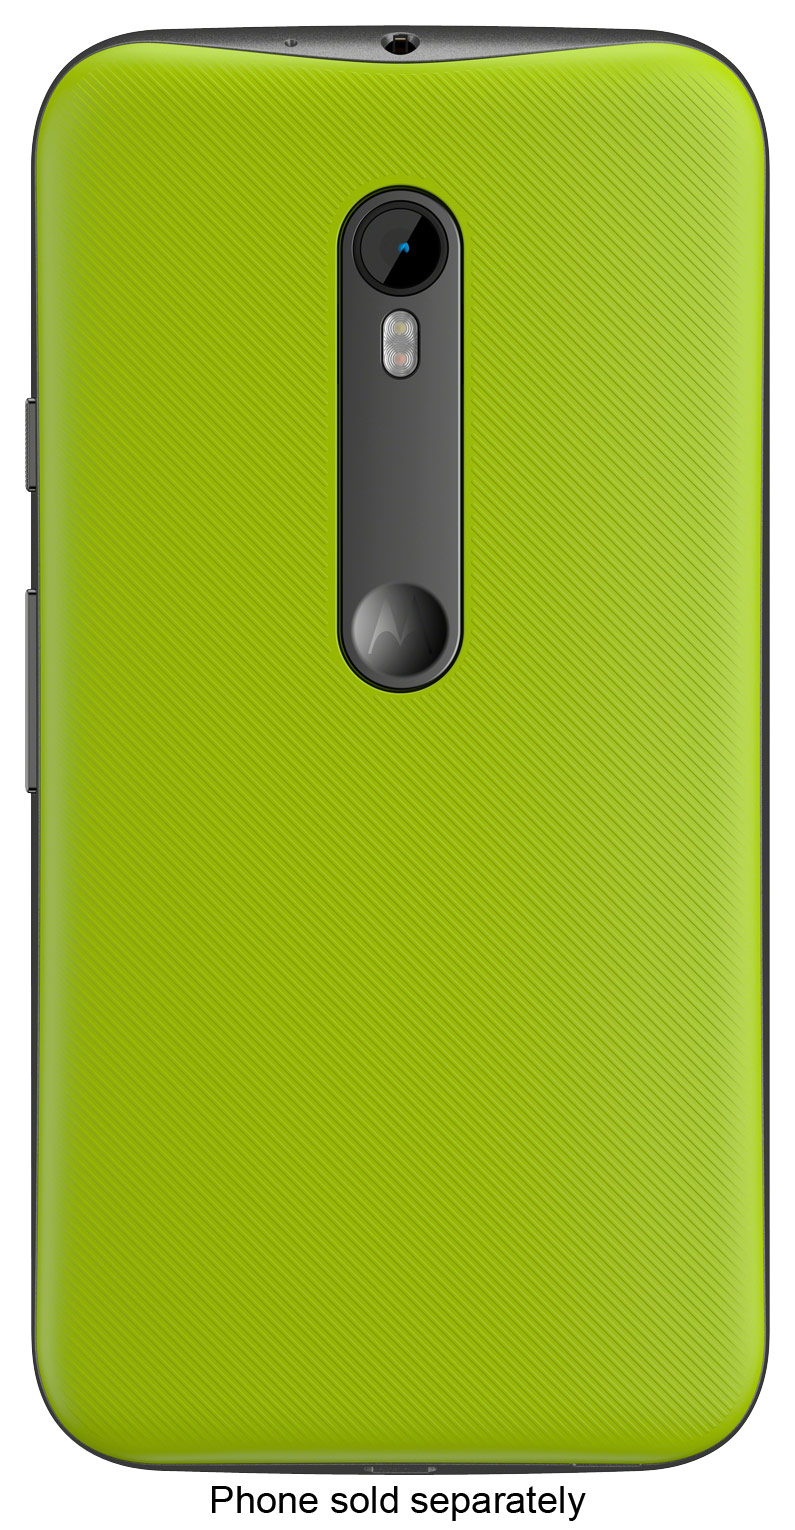 voorjaar Diversiteit Peer Best Buy: Motorola Shell Back Cover for MOTO G (3rd Gen.) Lemon lime 89817N